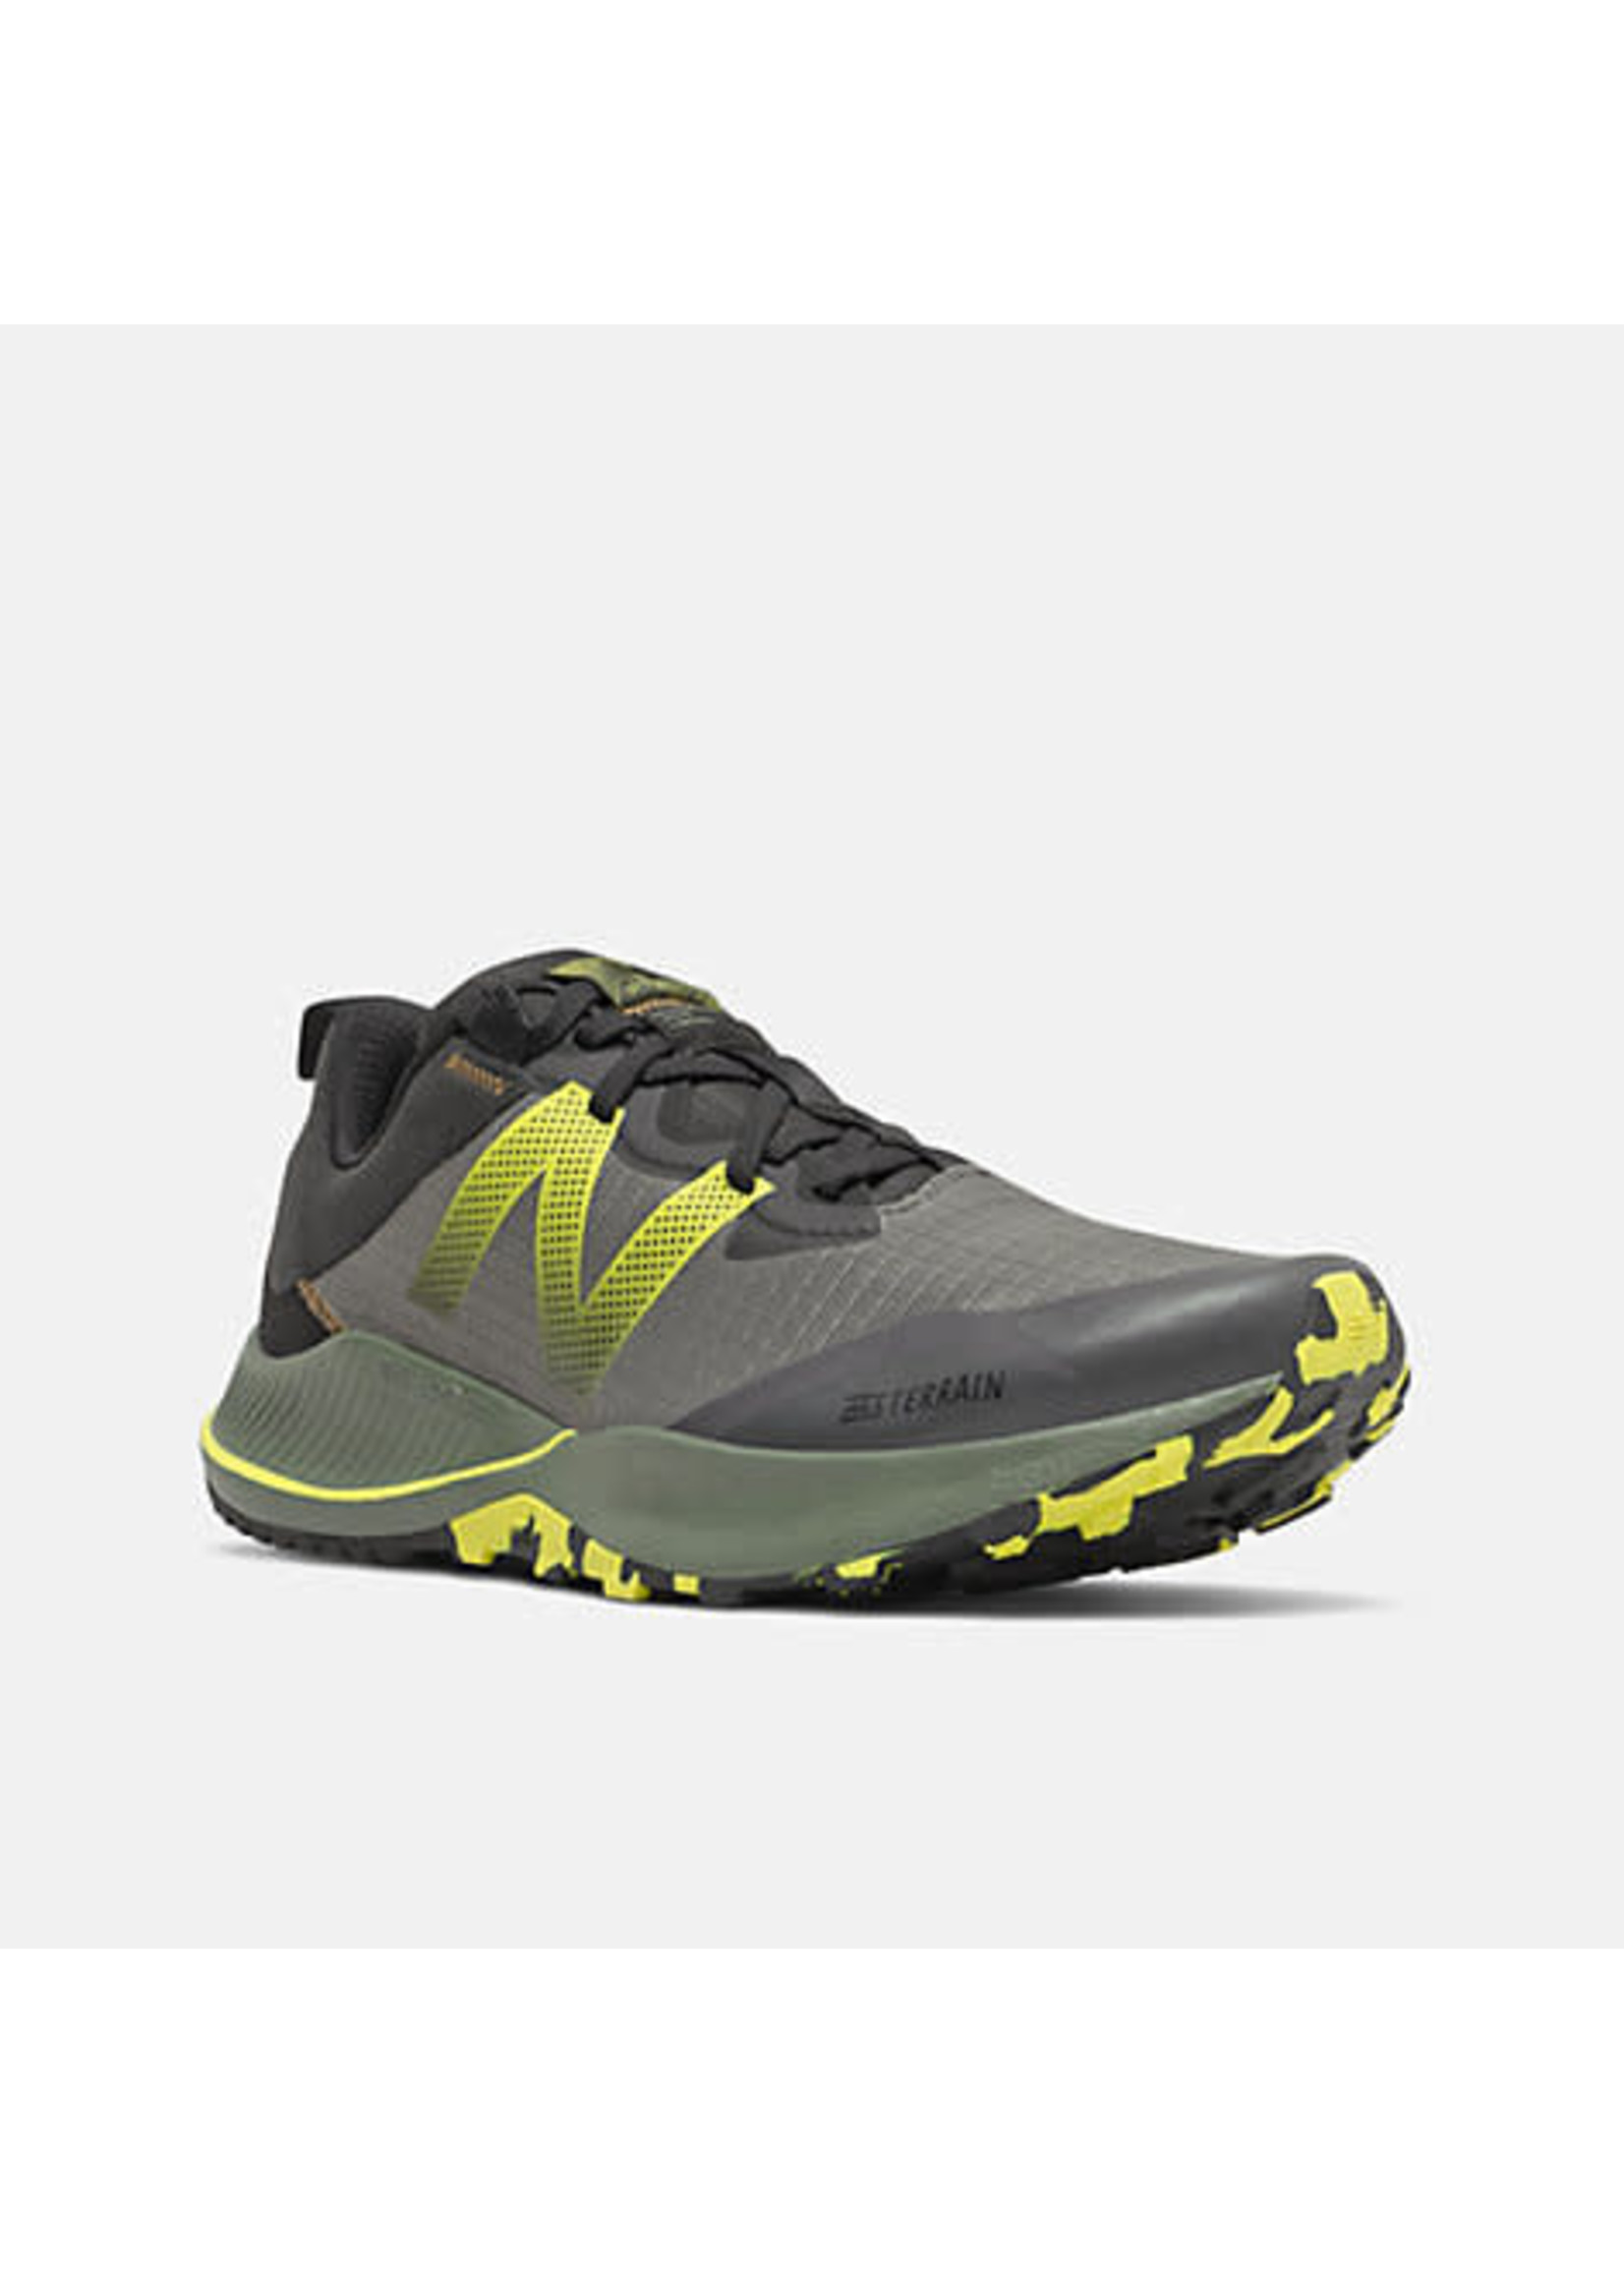 New Balance New Balance DynaSoft Nitrel v4 Mountain Trail Running Shoe